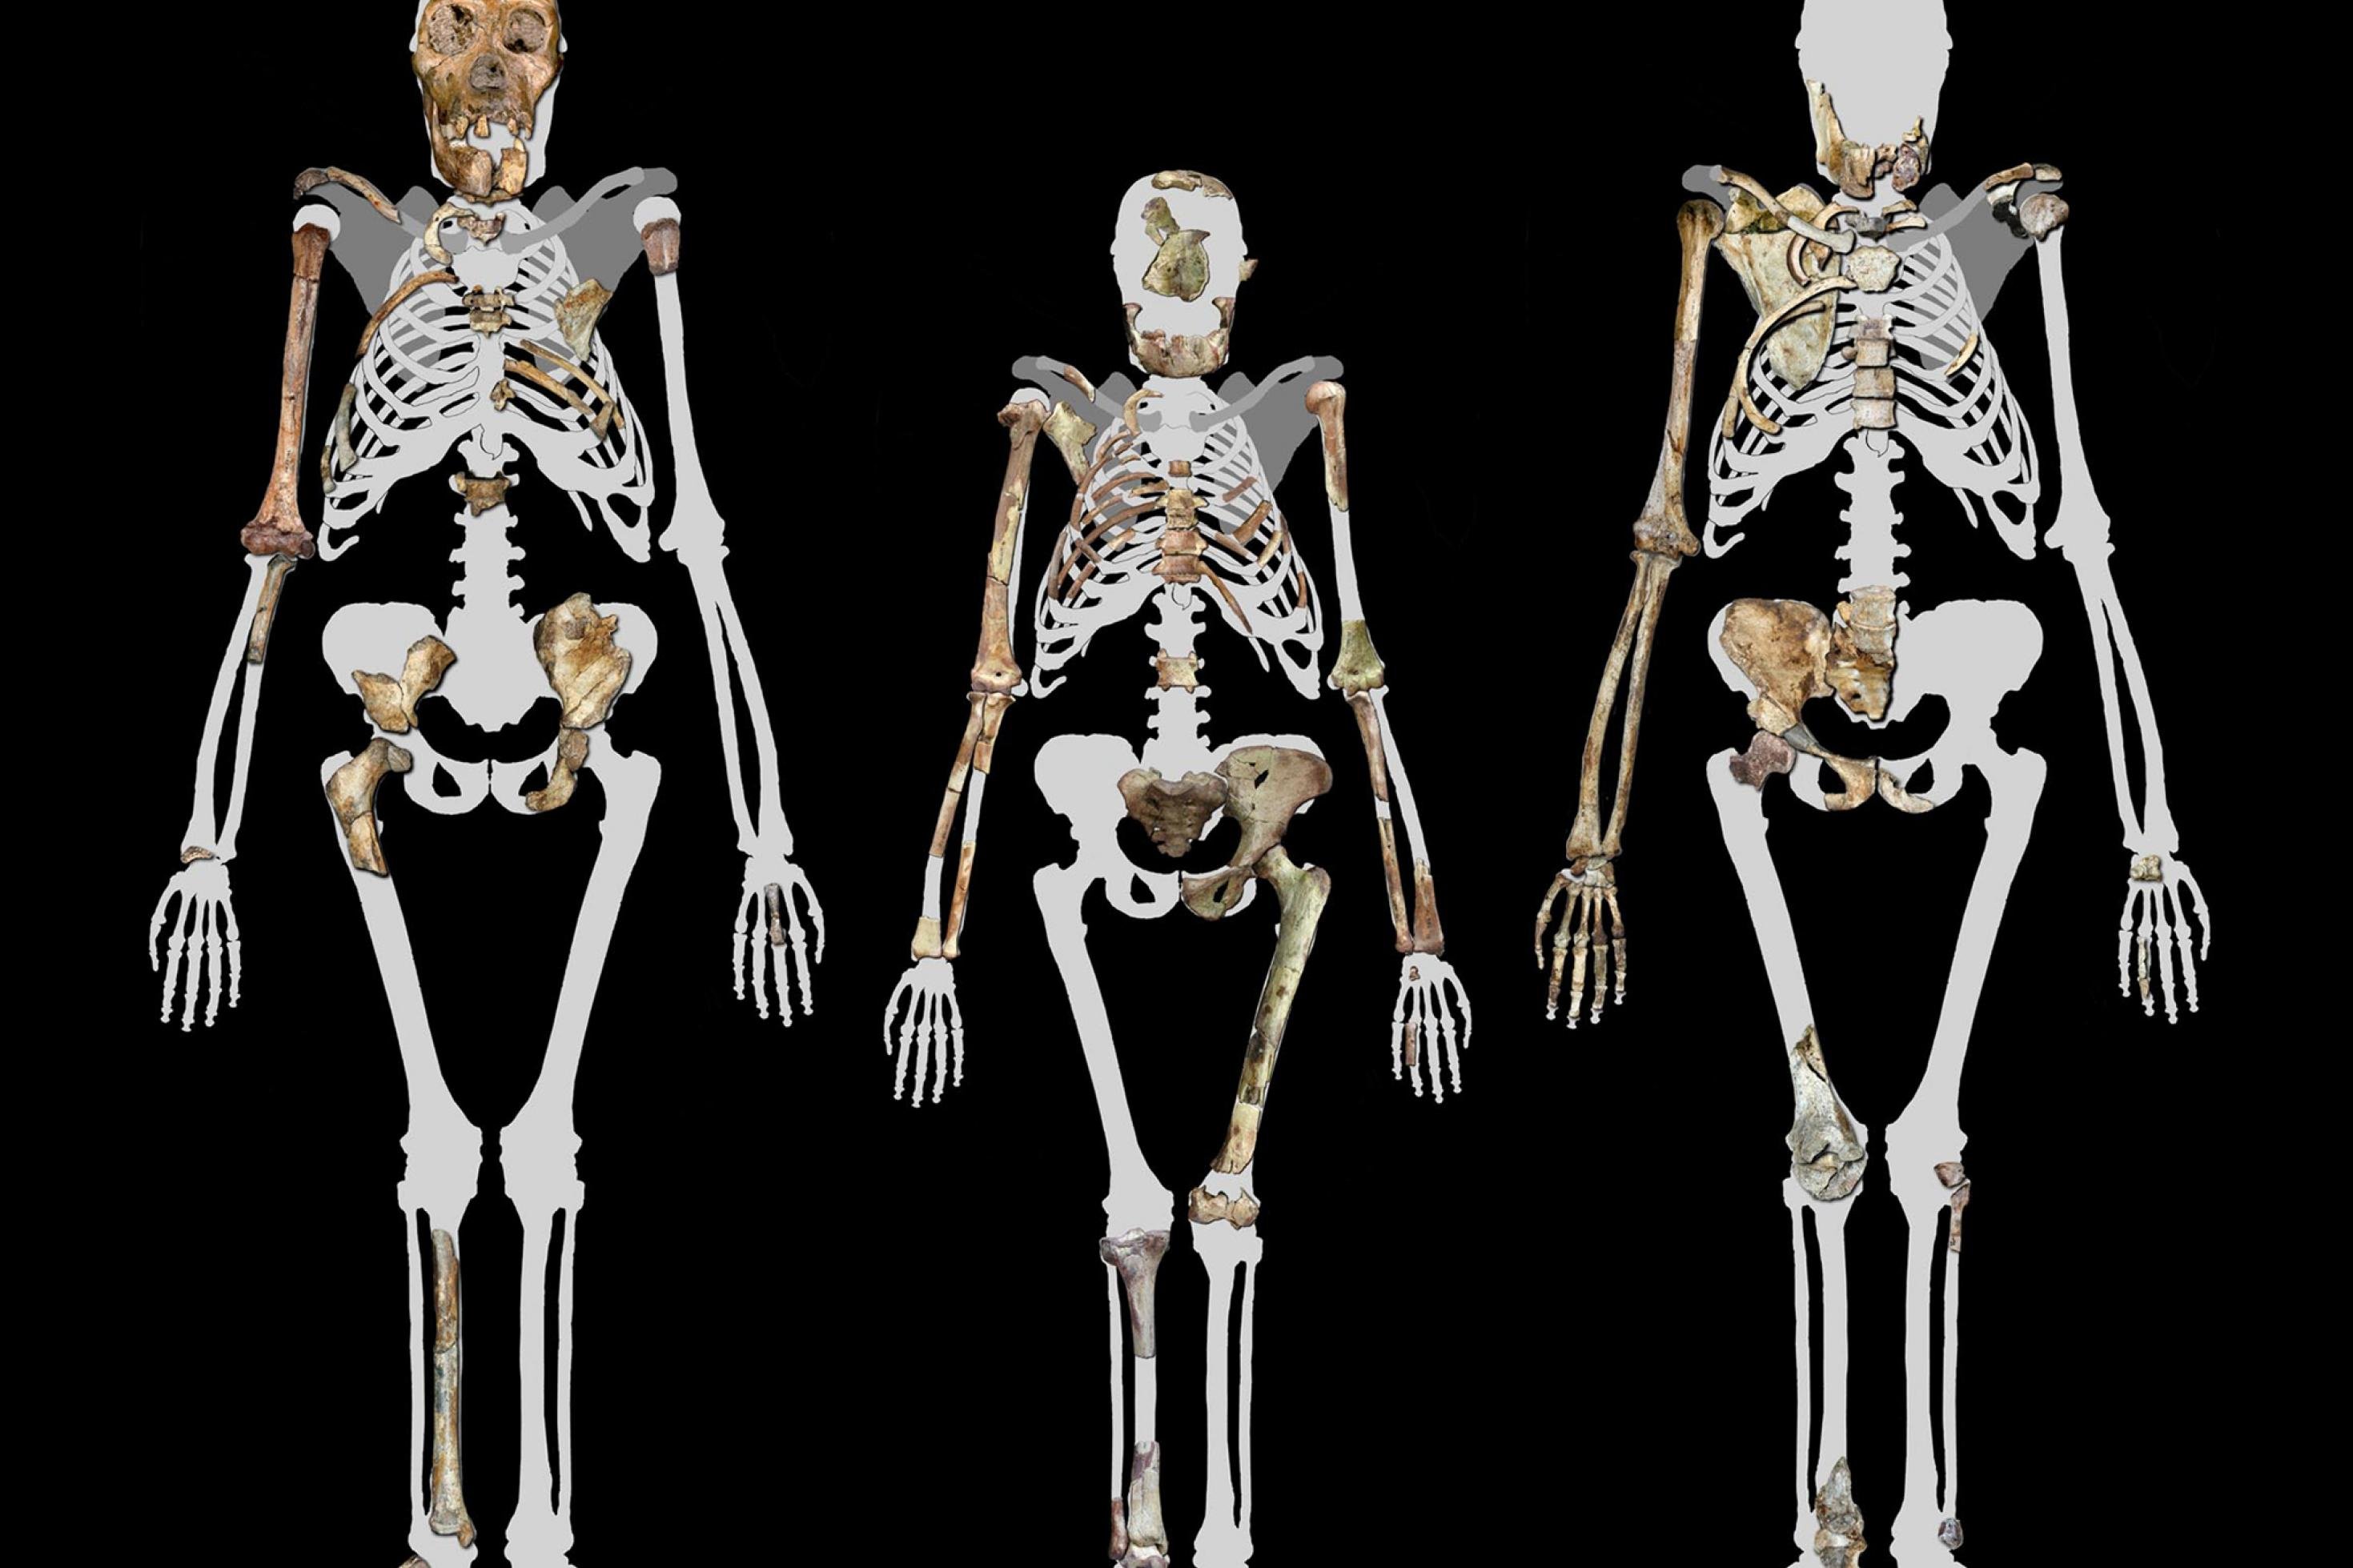 Dargestellt sind die rekonstruierten Umrisse von drei Skeletten, in die die fossilen Knochen von Vormenschen der Gattung Australopithecus projiziert wurden (in der Mitte „Lucy“). Die aufrechte Körperhaltung wurde zum Ausgangspunkt für die menschliche Evolution.